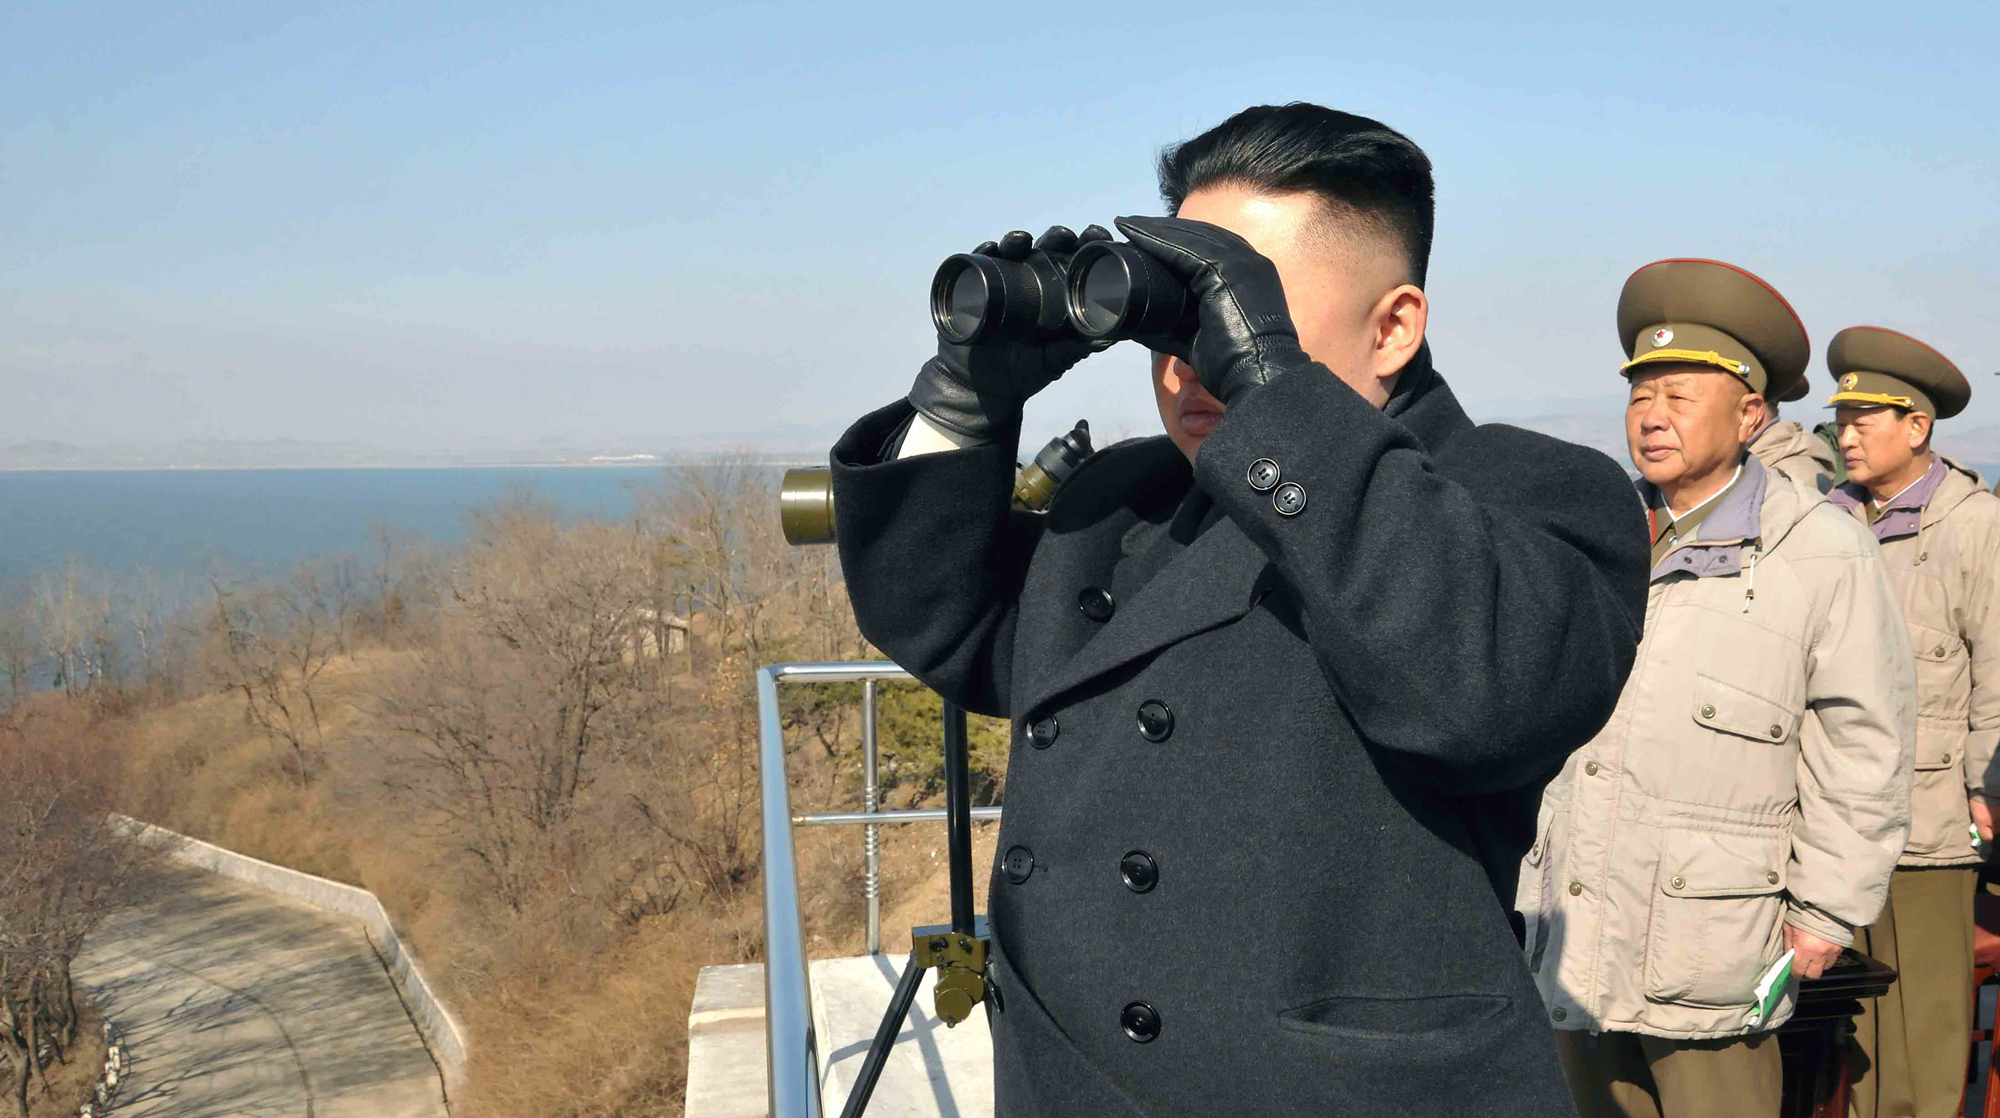 Специалисты изучили спутниковые снимки верфи в Северной Корее и обнаружили передовой аппарат Пхеньяна Фото: © GLOBAL LOOK press